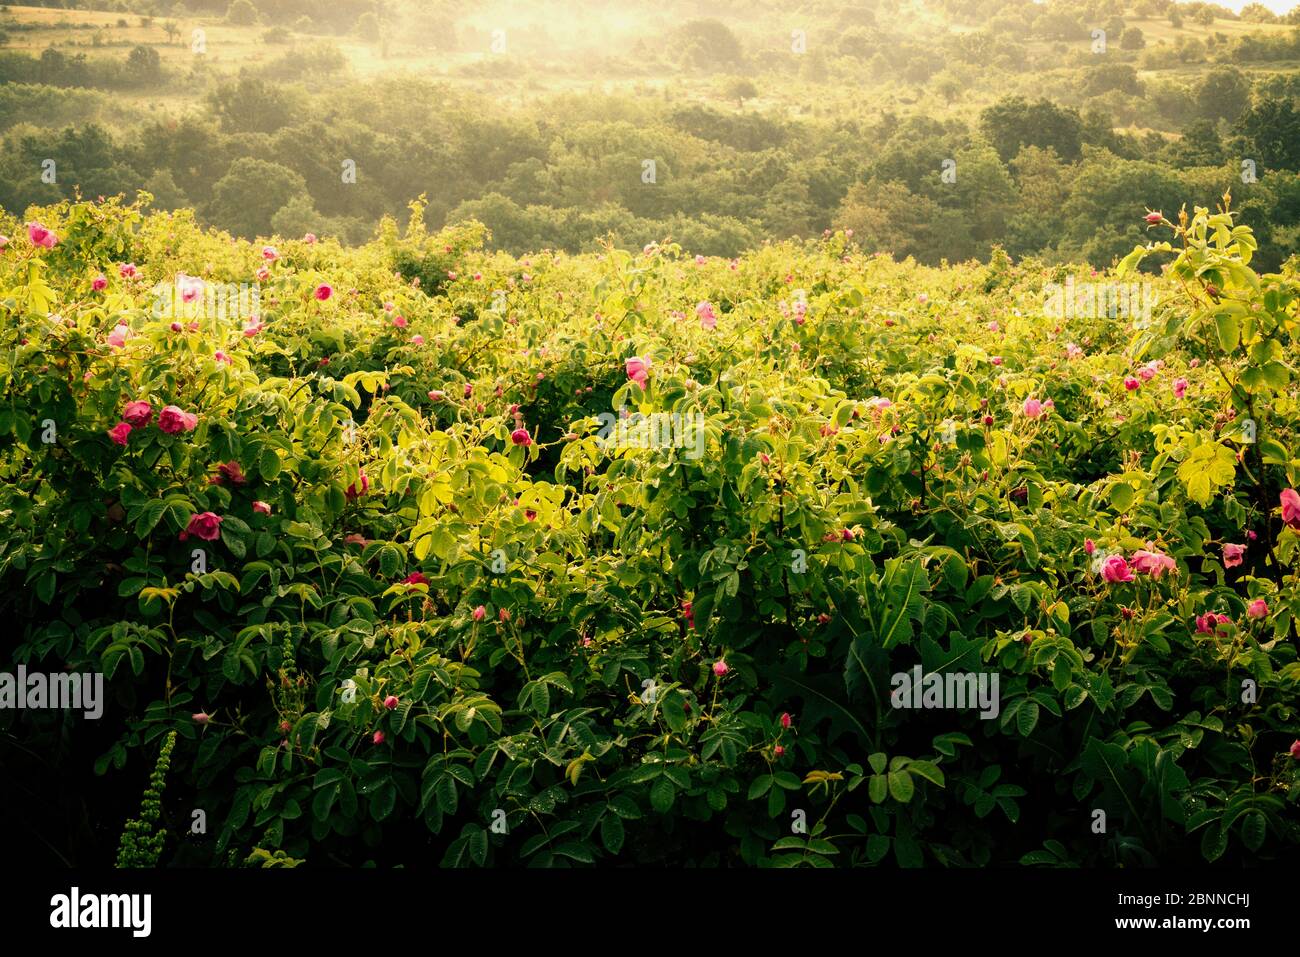 Valley of Roses. Damask Roses (Rosa damascena). Bulgaria, Europe Stock Photo